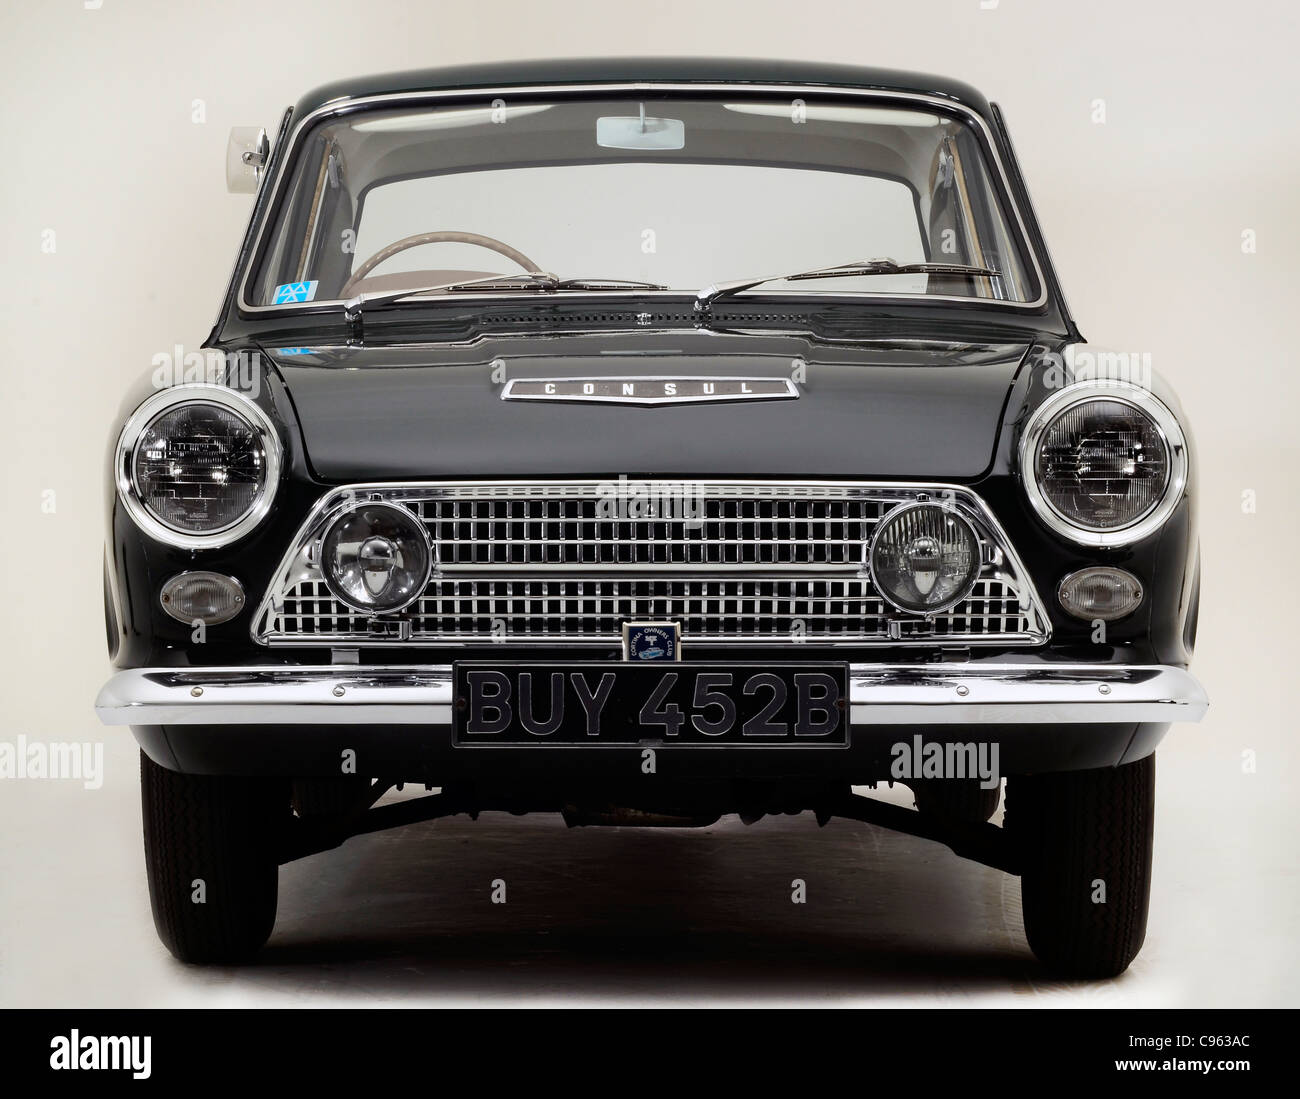 1962 Ford Consul Cortina DeLuxe Stock Photo